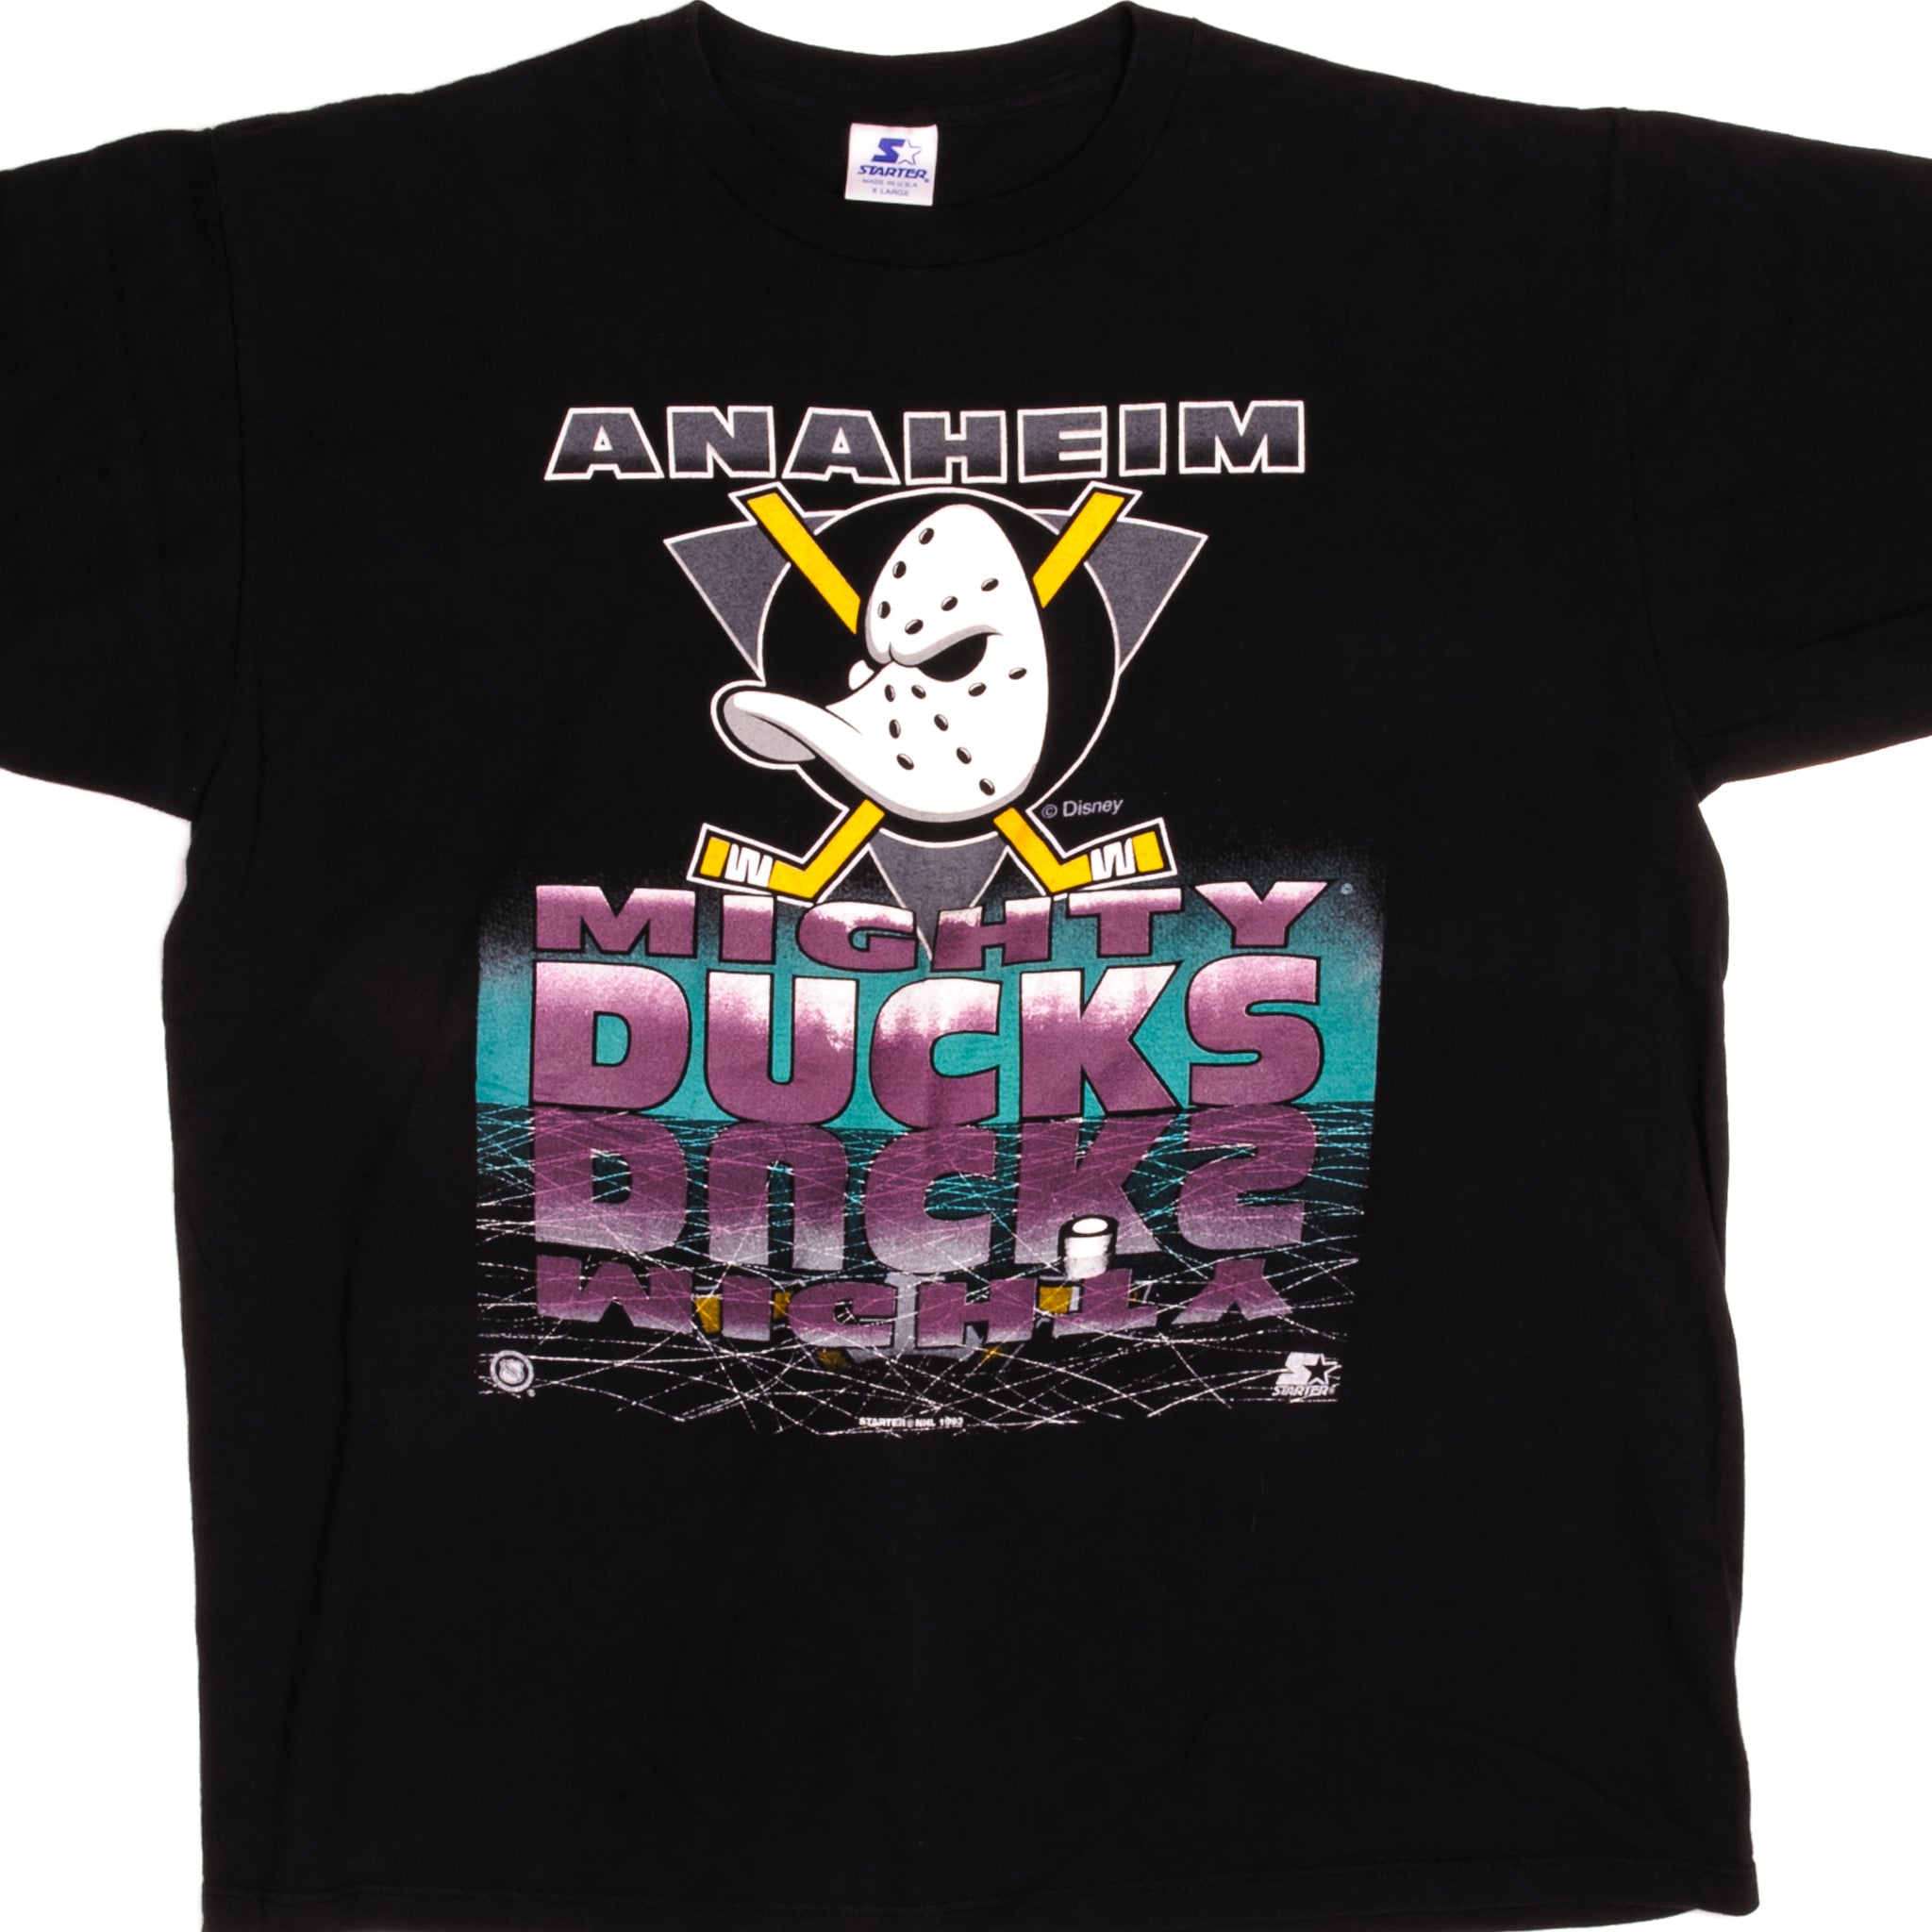 Vintage 90s Anaheim Ducks Sweatshirt/ Anaheim Ducks Shirt/ 